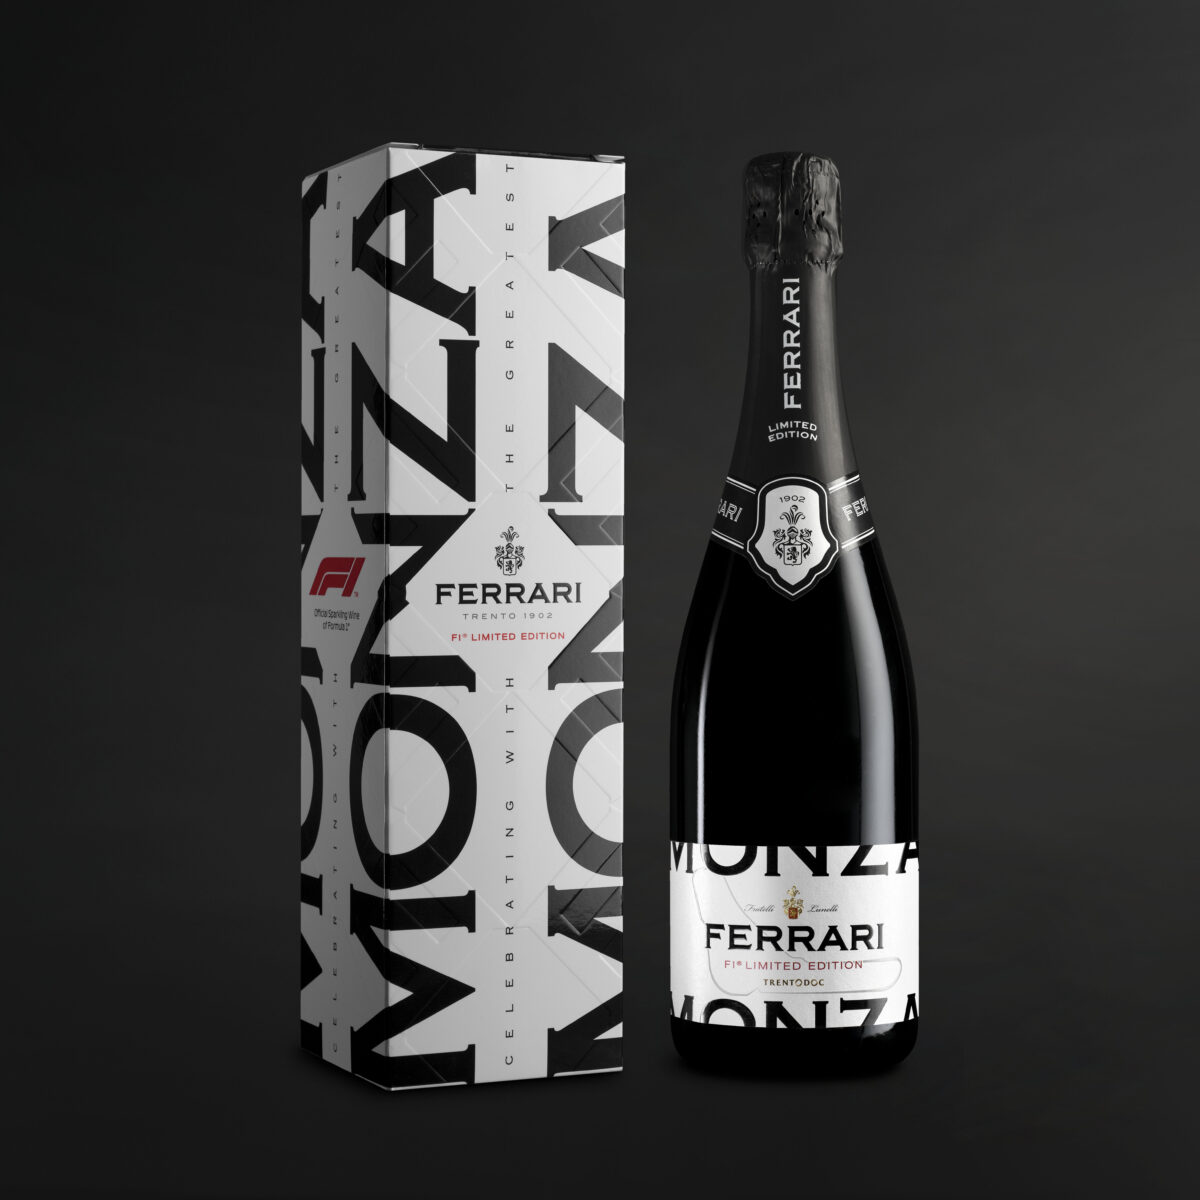 FERRARI F1® Limited Edition “MONZA” フェッラーリ F1®リミテッド・エディション “モンツァ”